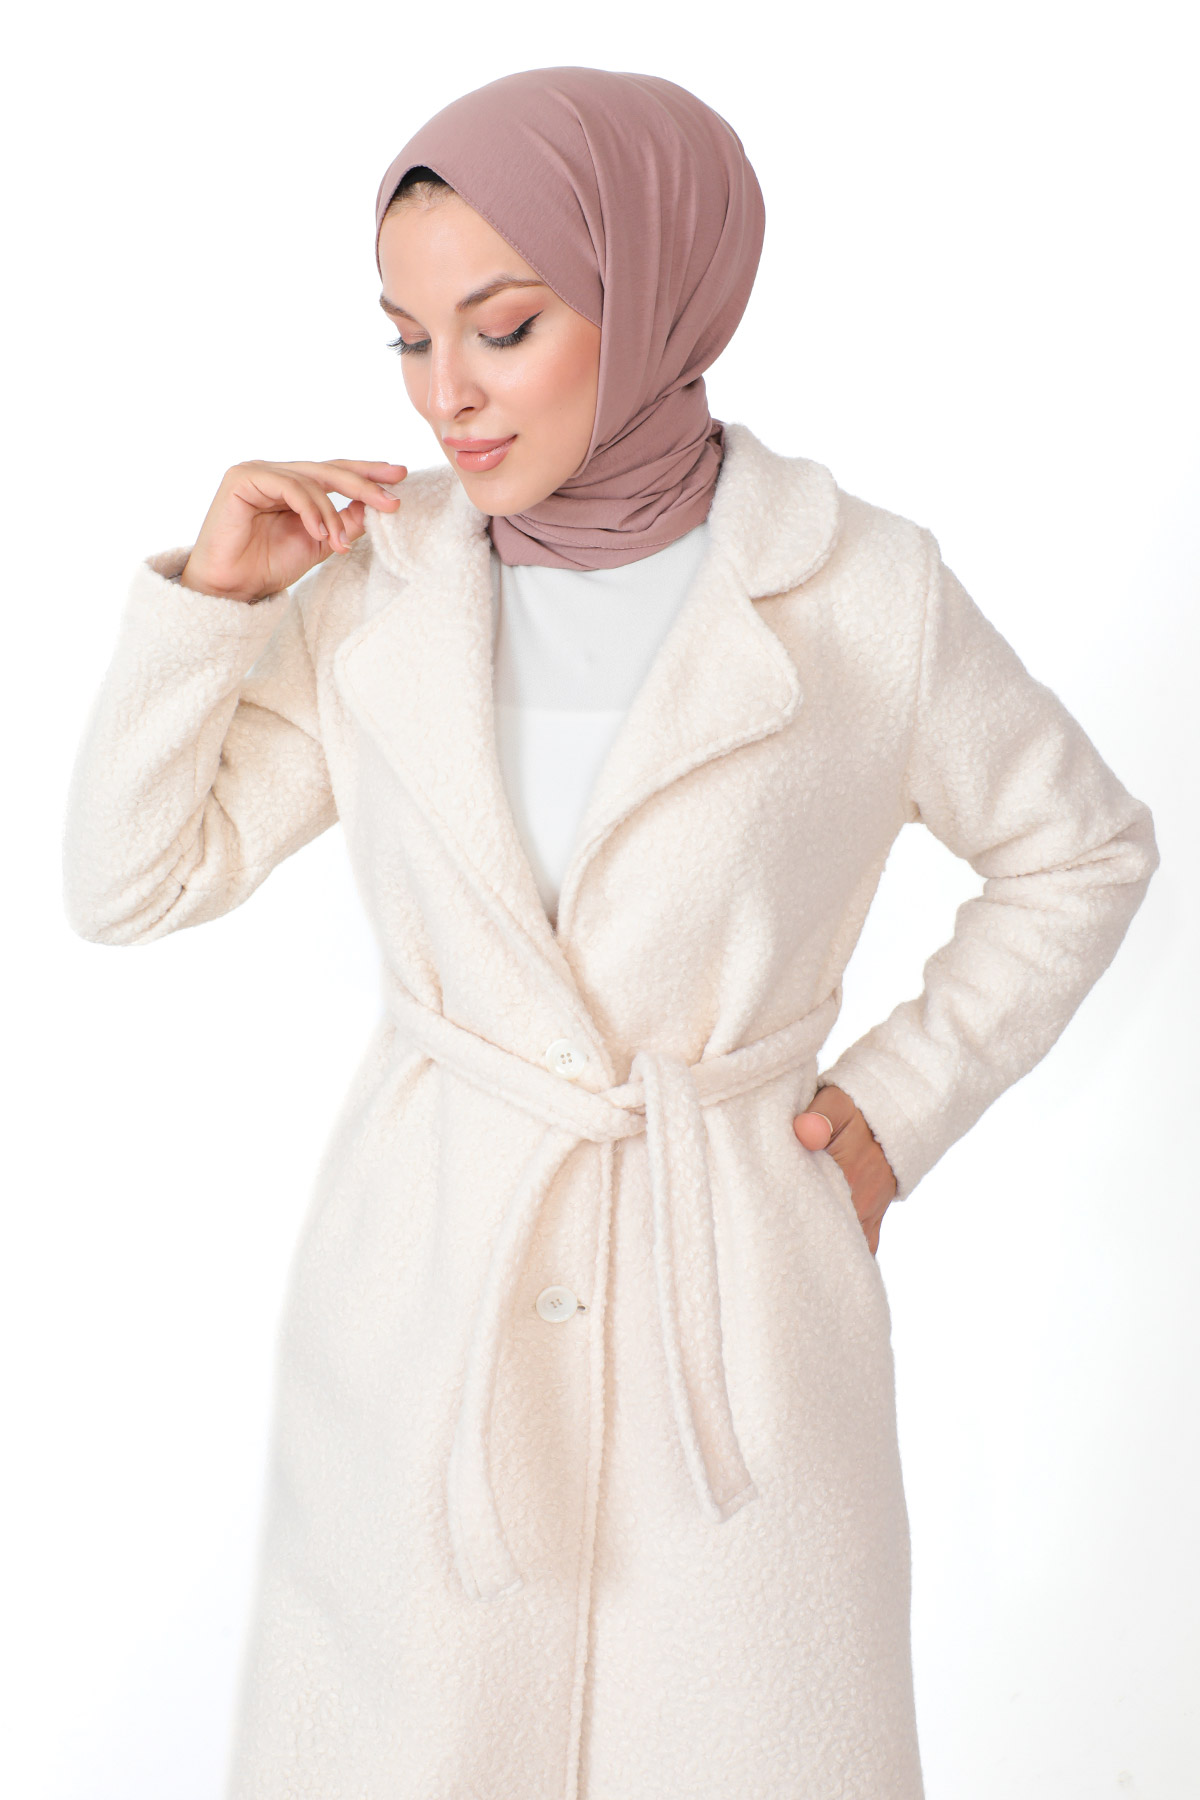 turkish hijab dresses online